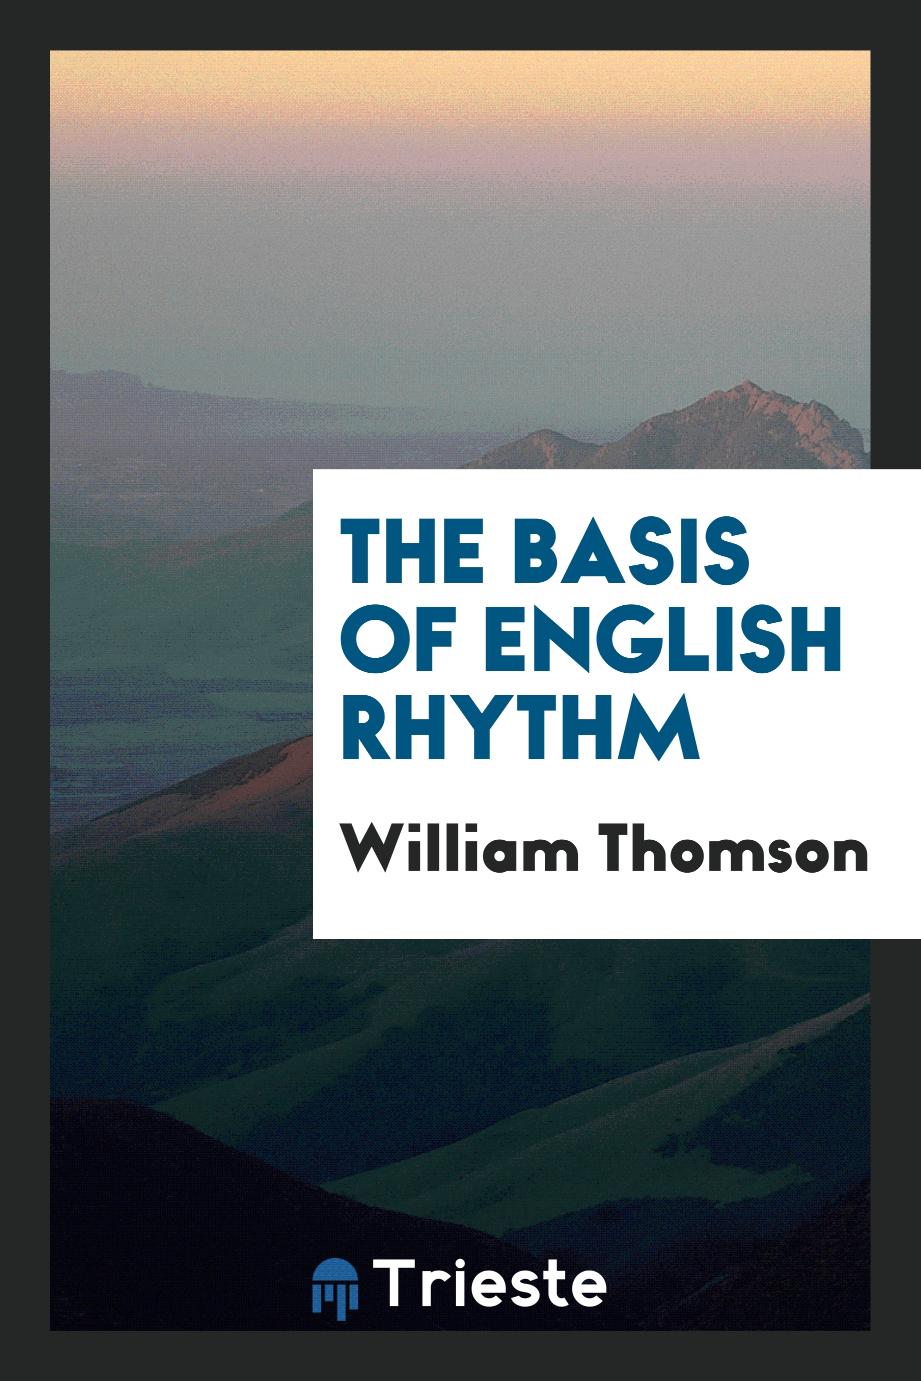 The Basis of English Rhythm